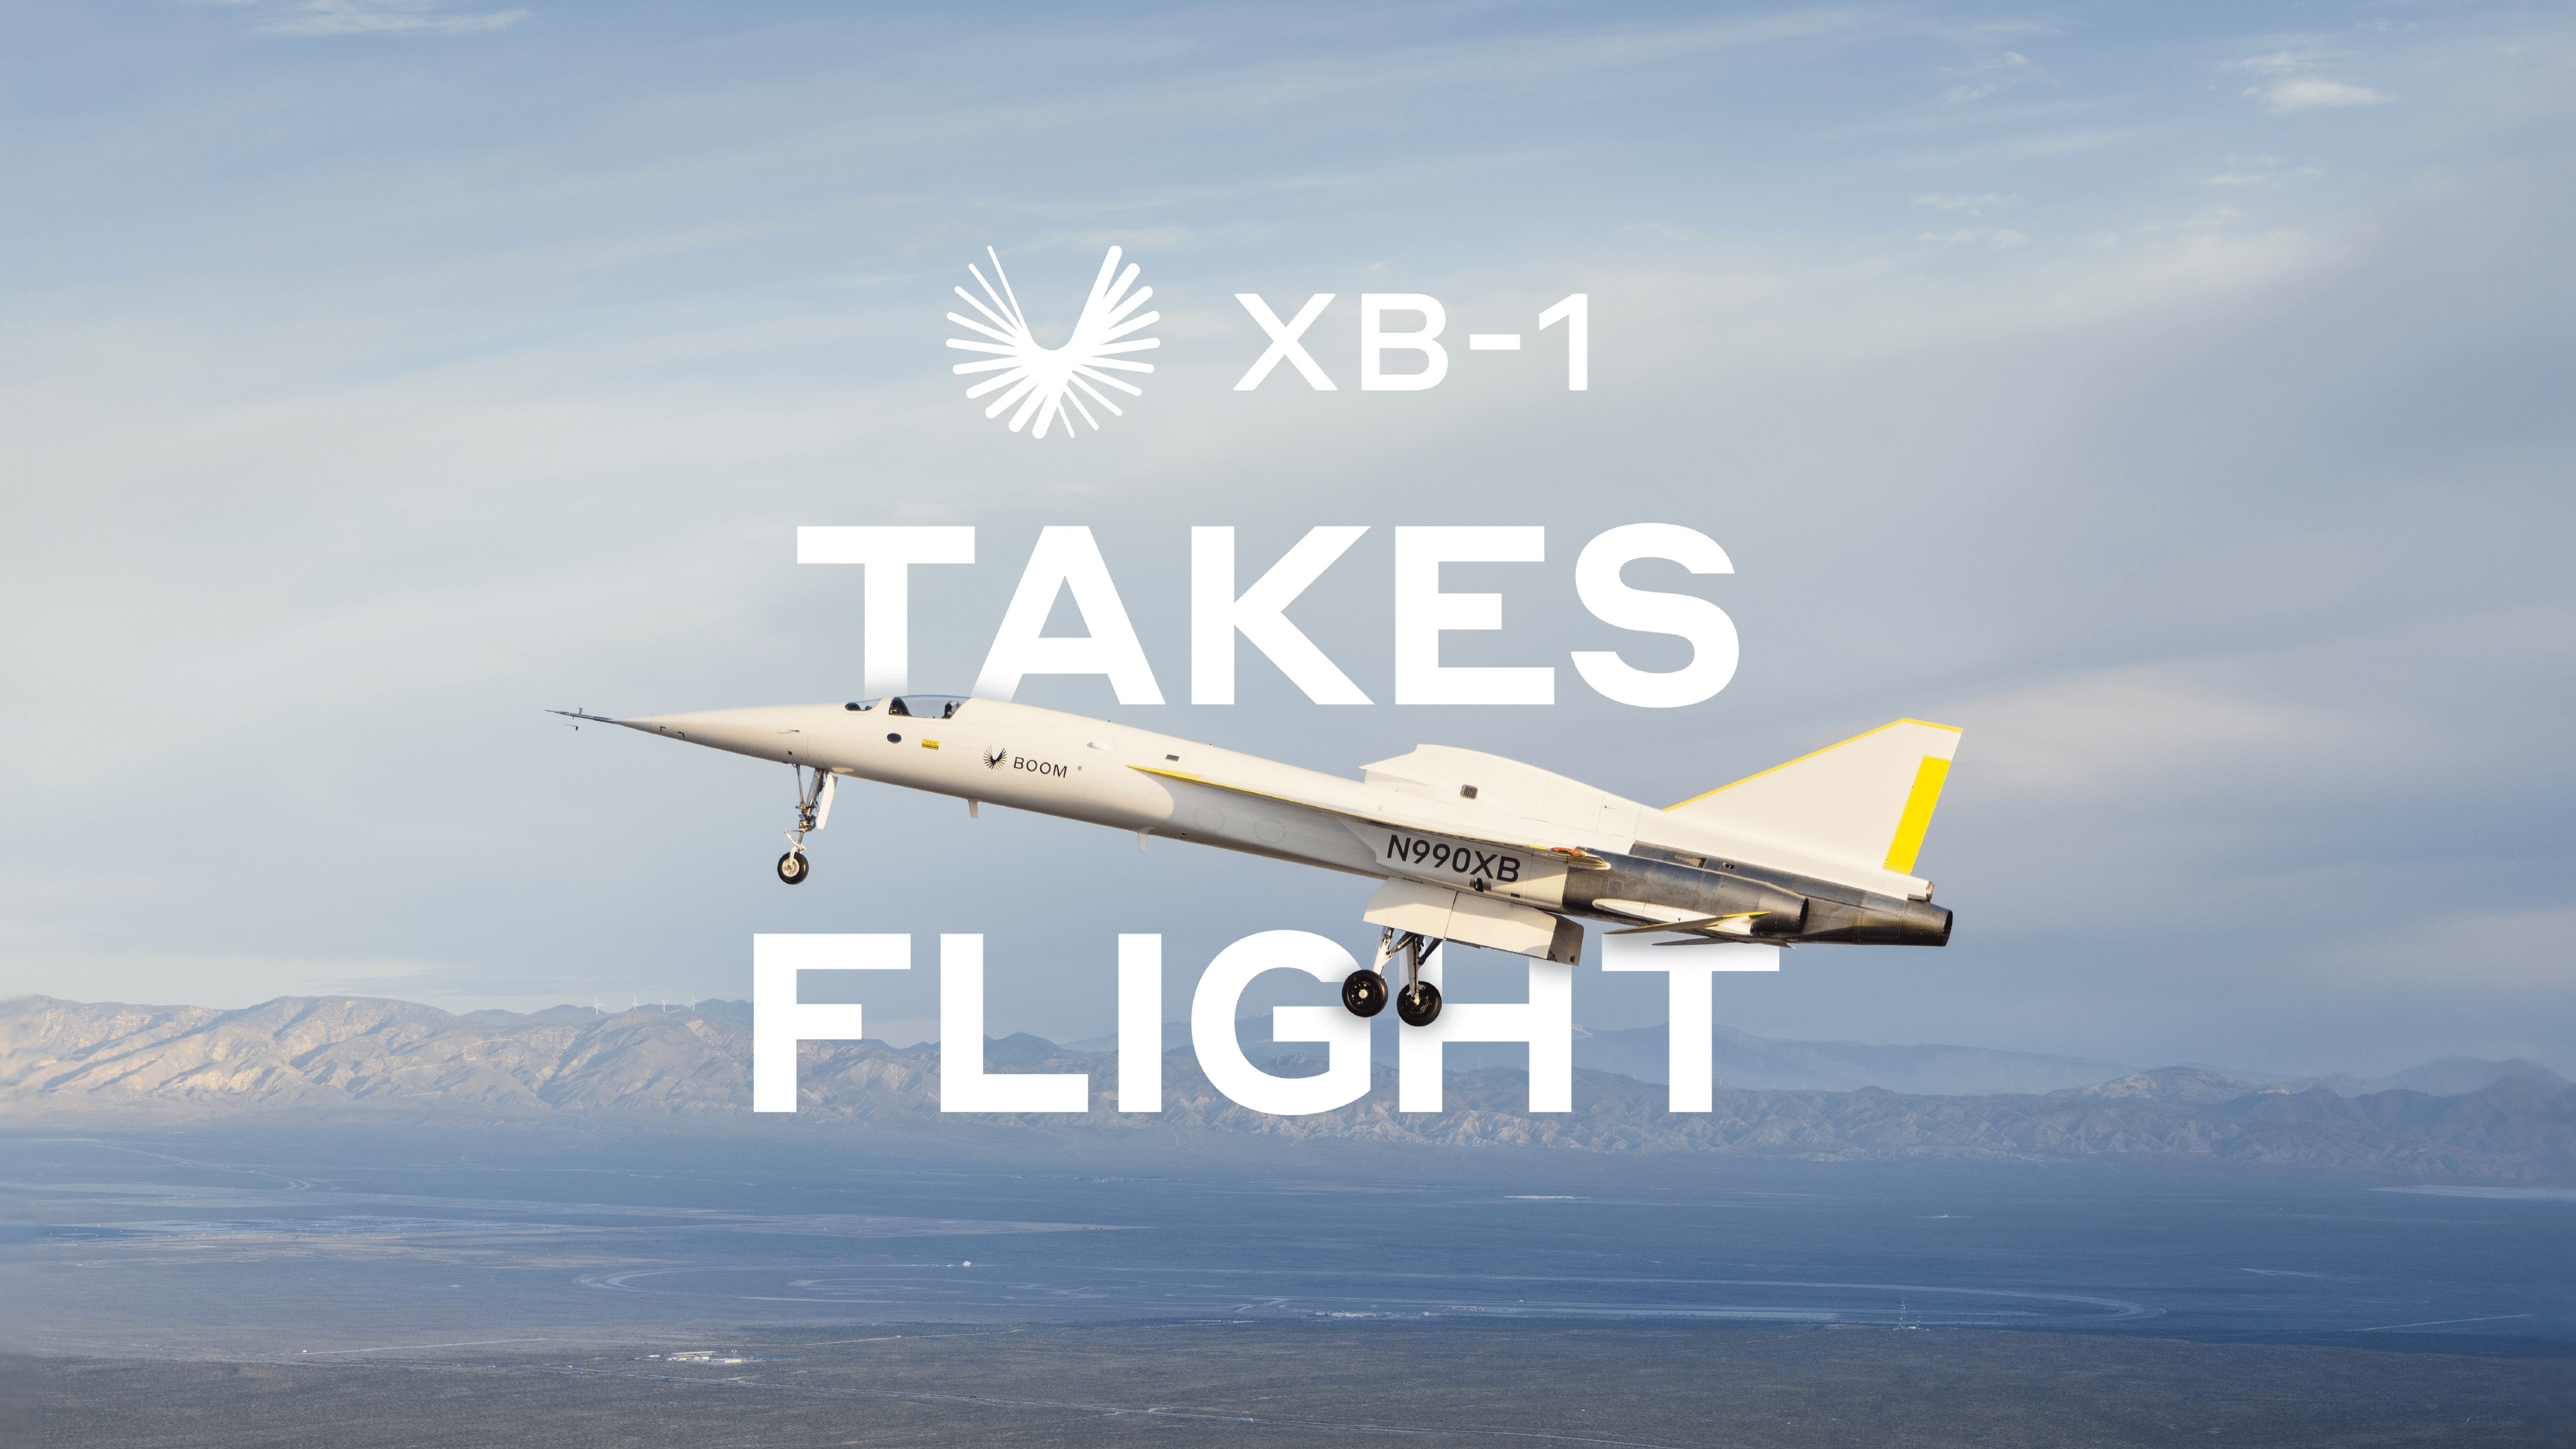 Boom XB-1 ilk uçuşunu yaparak süpersonik uçuşlara göz kırptı